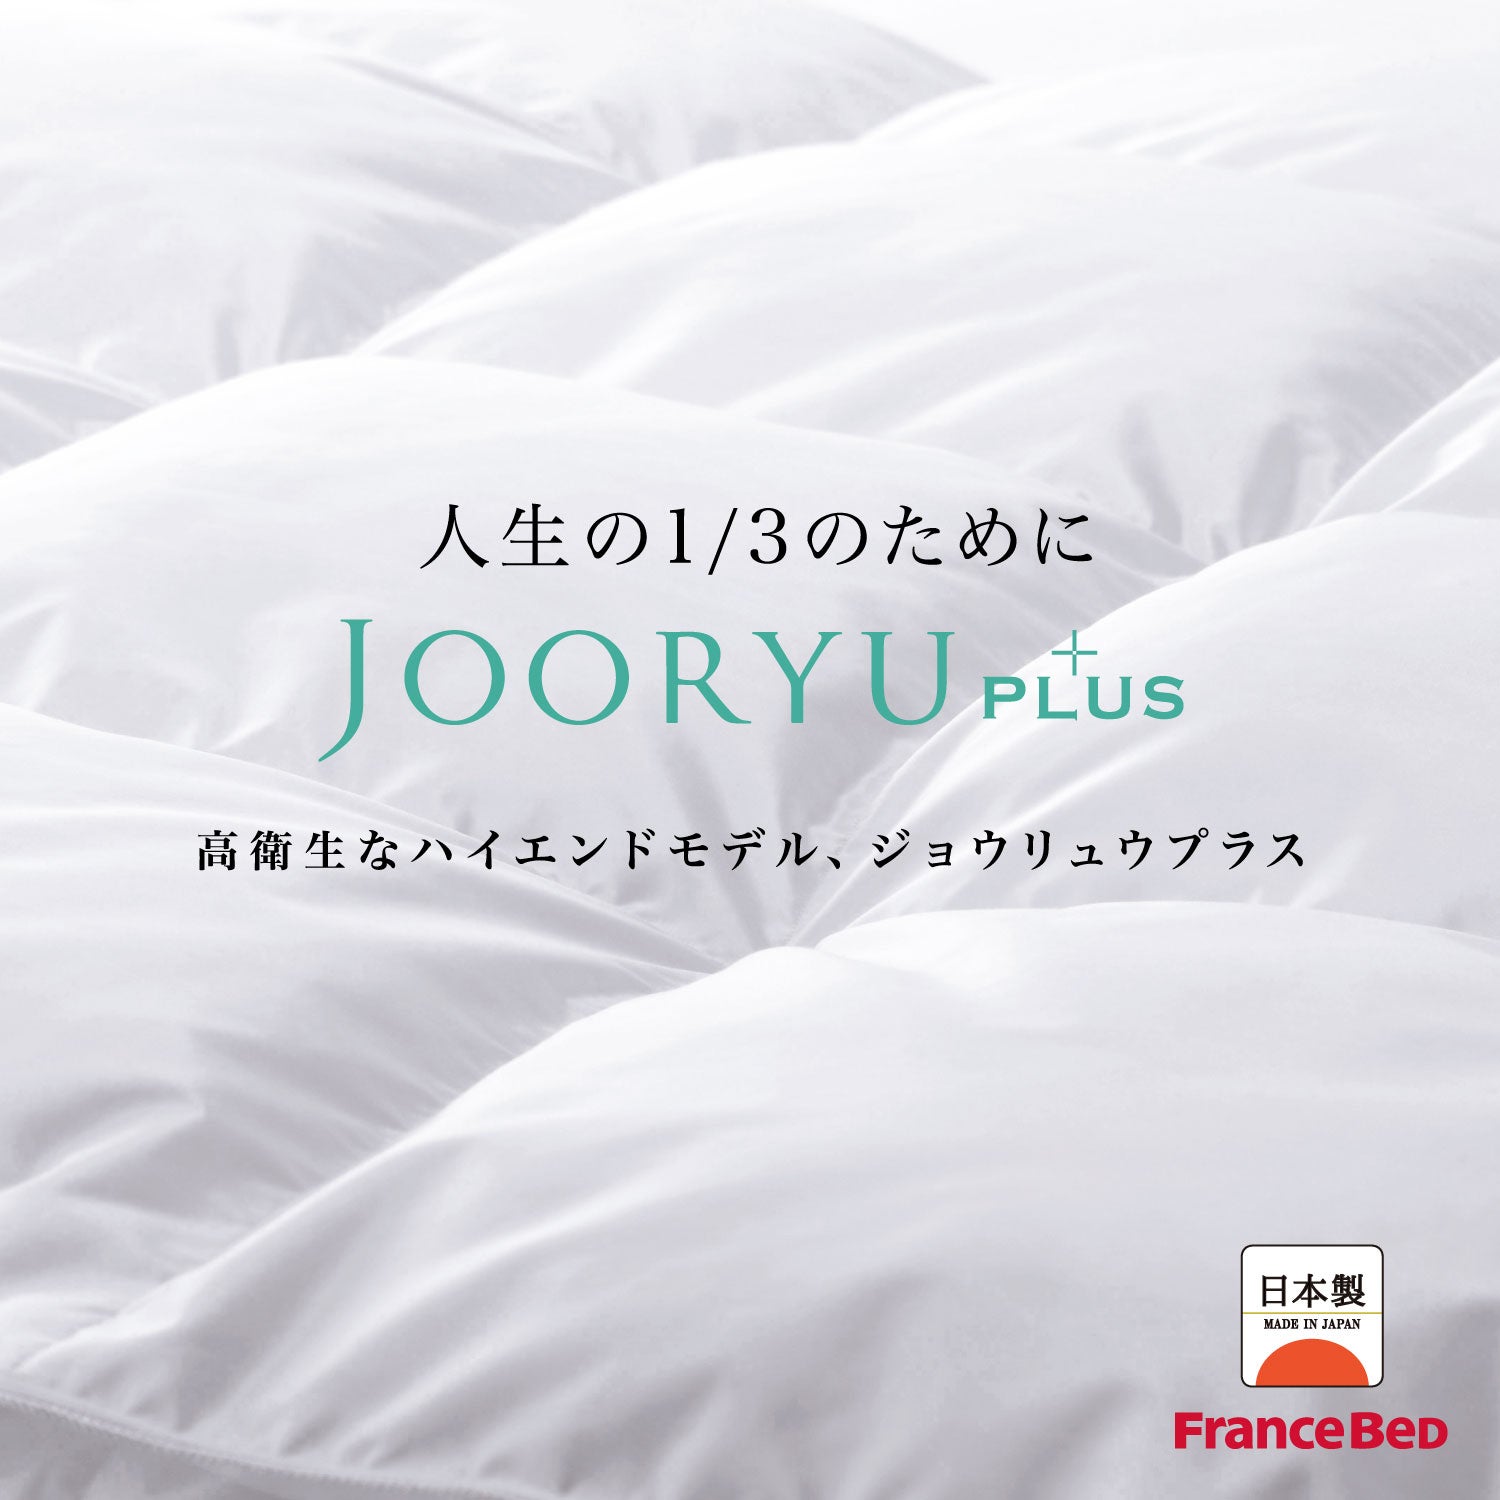 厳しい品質基準から生まれる、フランスベッドの羽毛ふとん「
JOORYU」